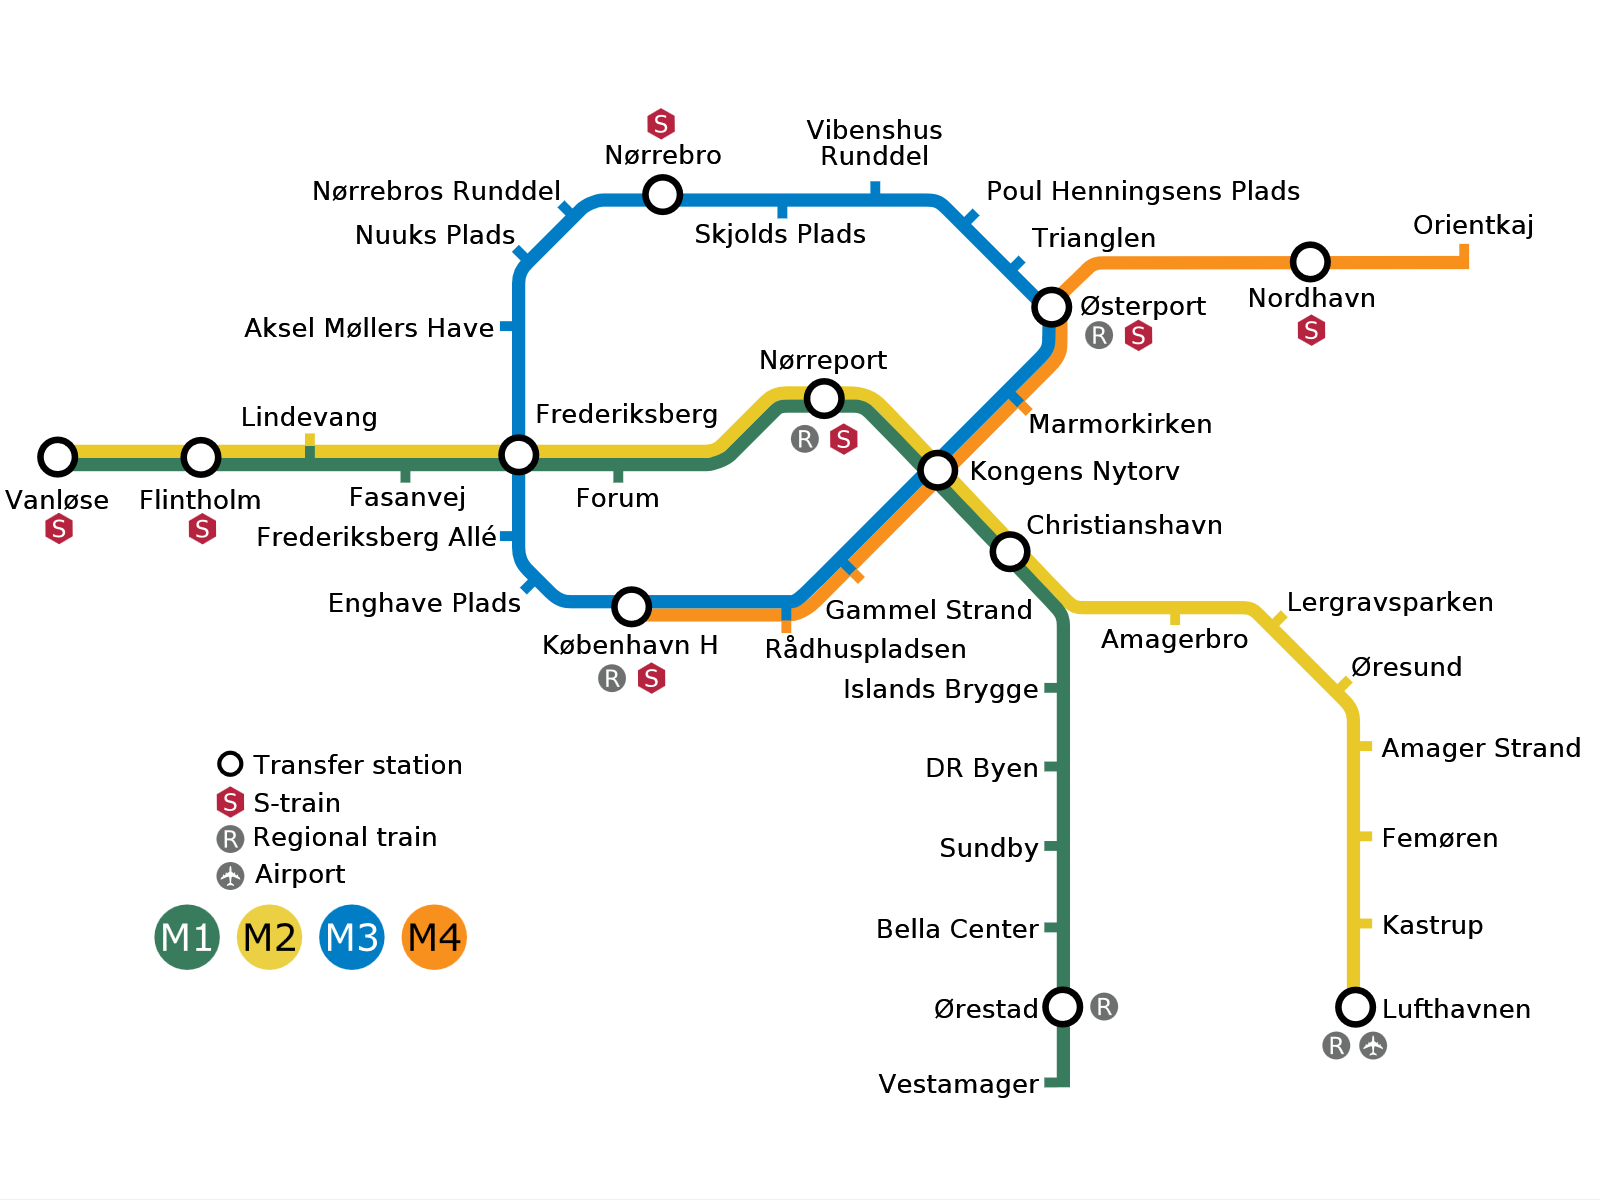 Схема метро со строящимися станциями.